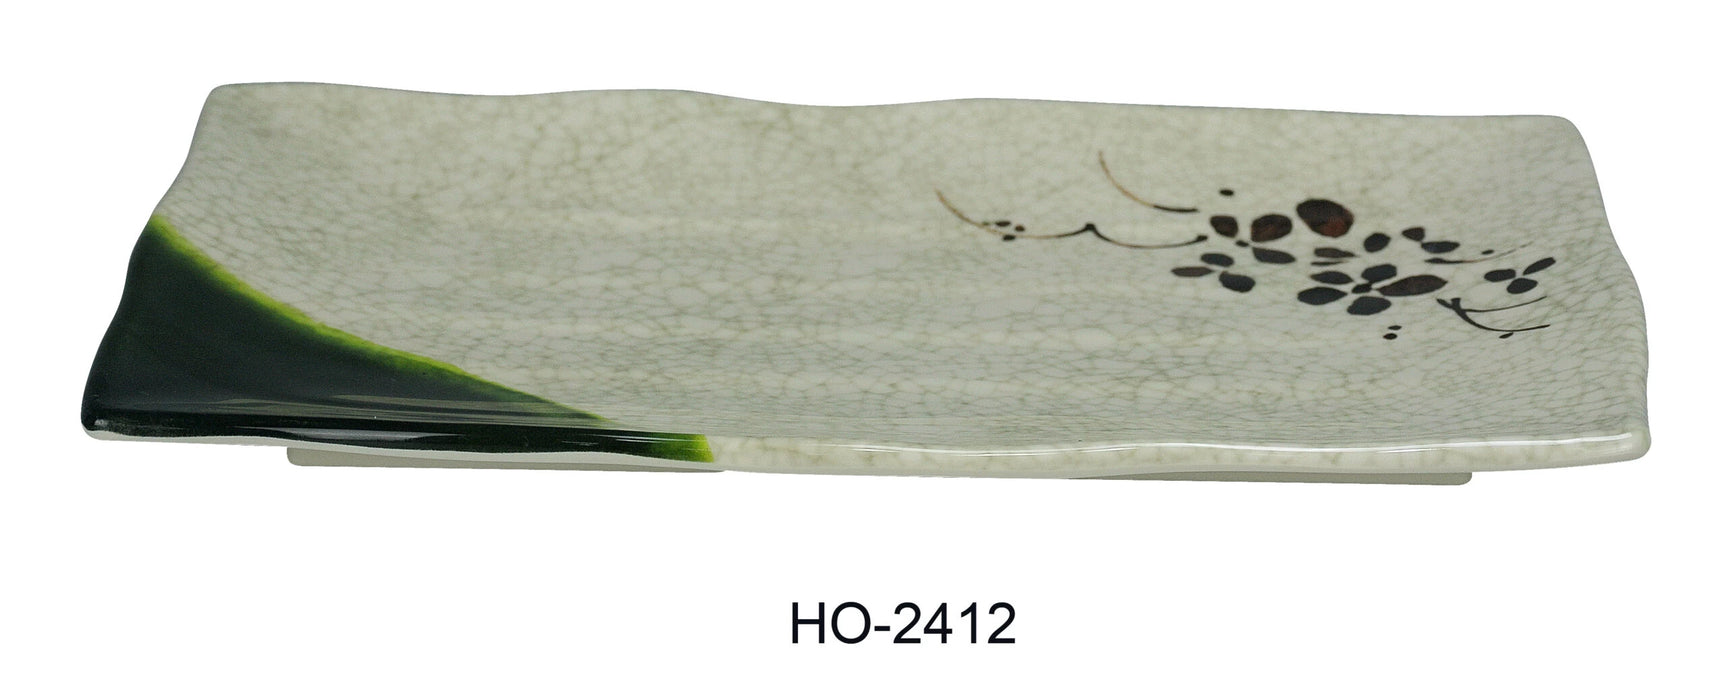 Yanco HO-2412 Honda Ripple Plate, Rectangular, 11″ Length, 8″ Width, Melamine, Pack of 36